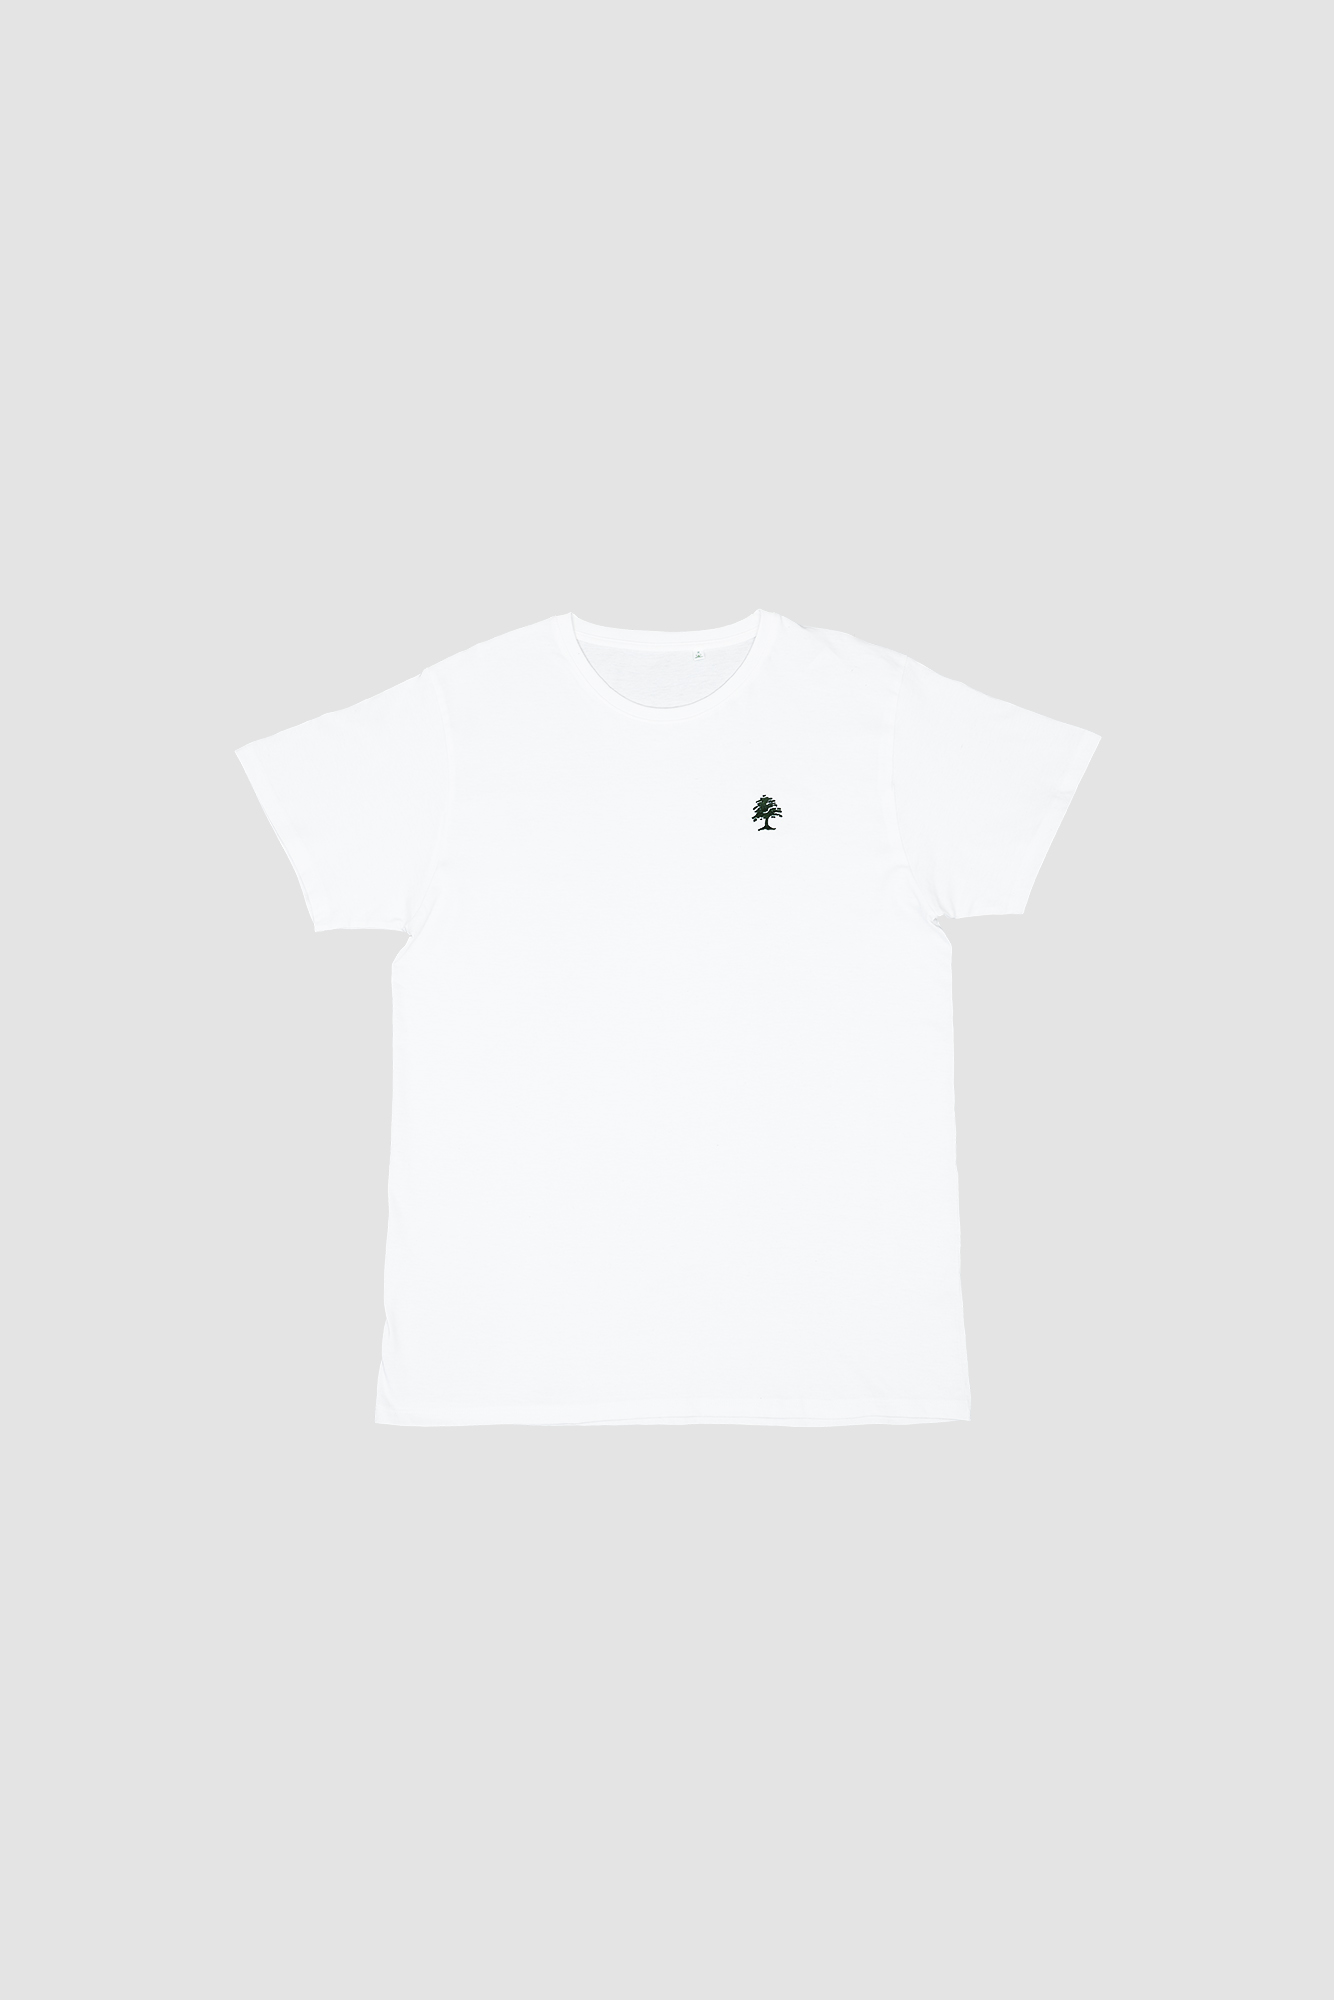 T-shirt« Fruit Tree » (Couleur Blanc Clubbing)